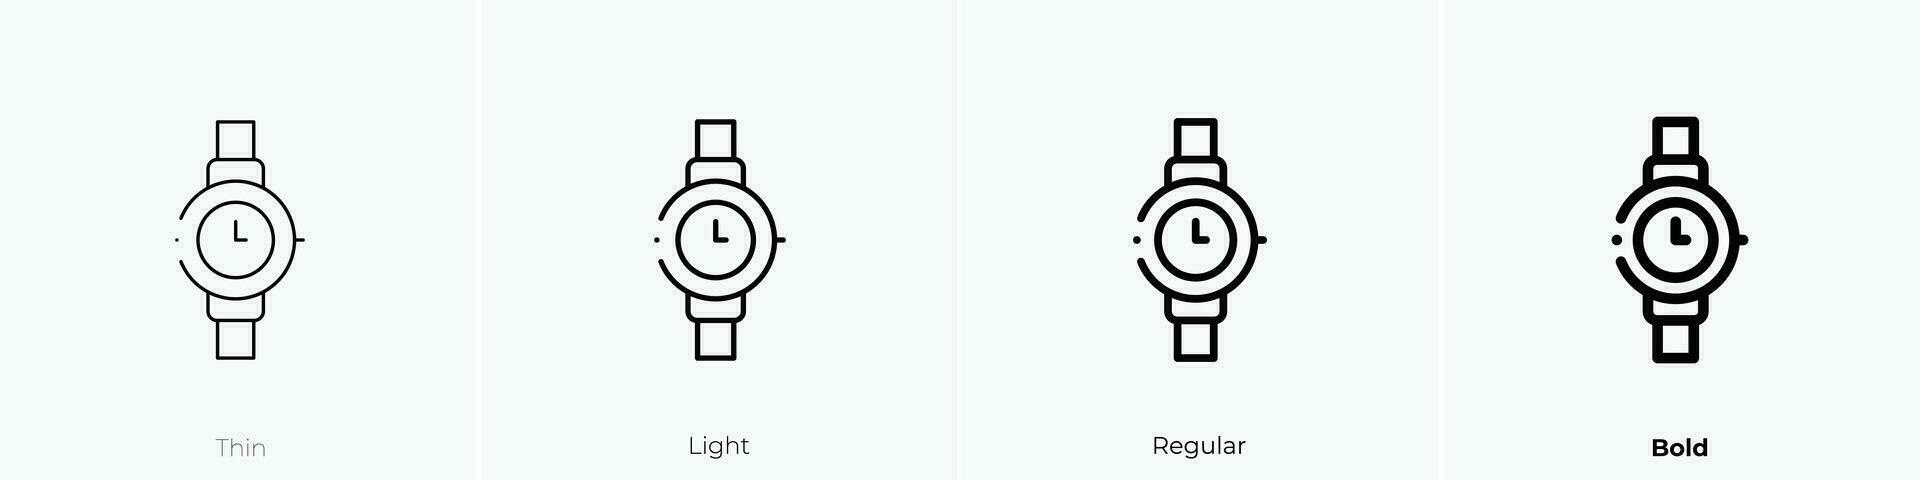 Armbanduhr Symbol. dünn, Licht, regulär und Fett gedruckt Stil Design isoliert auf Weiß Hintergrund vektor